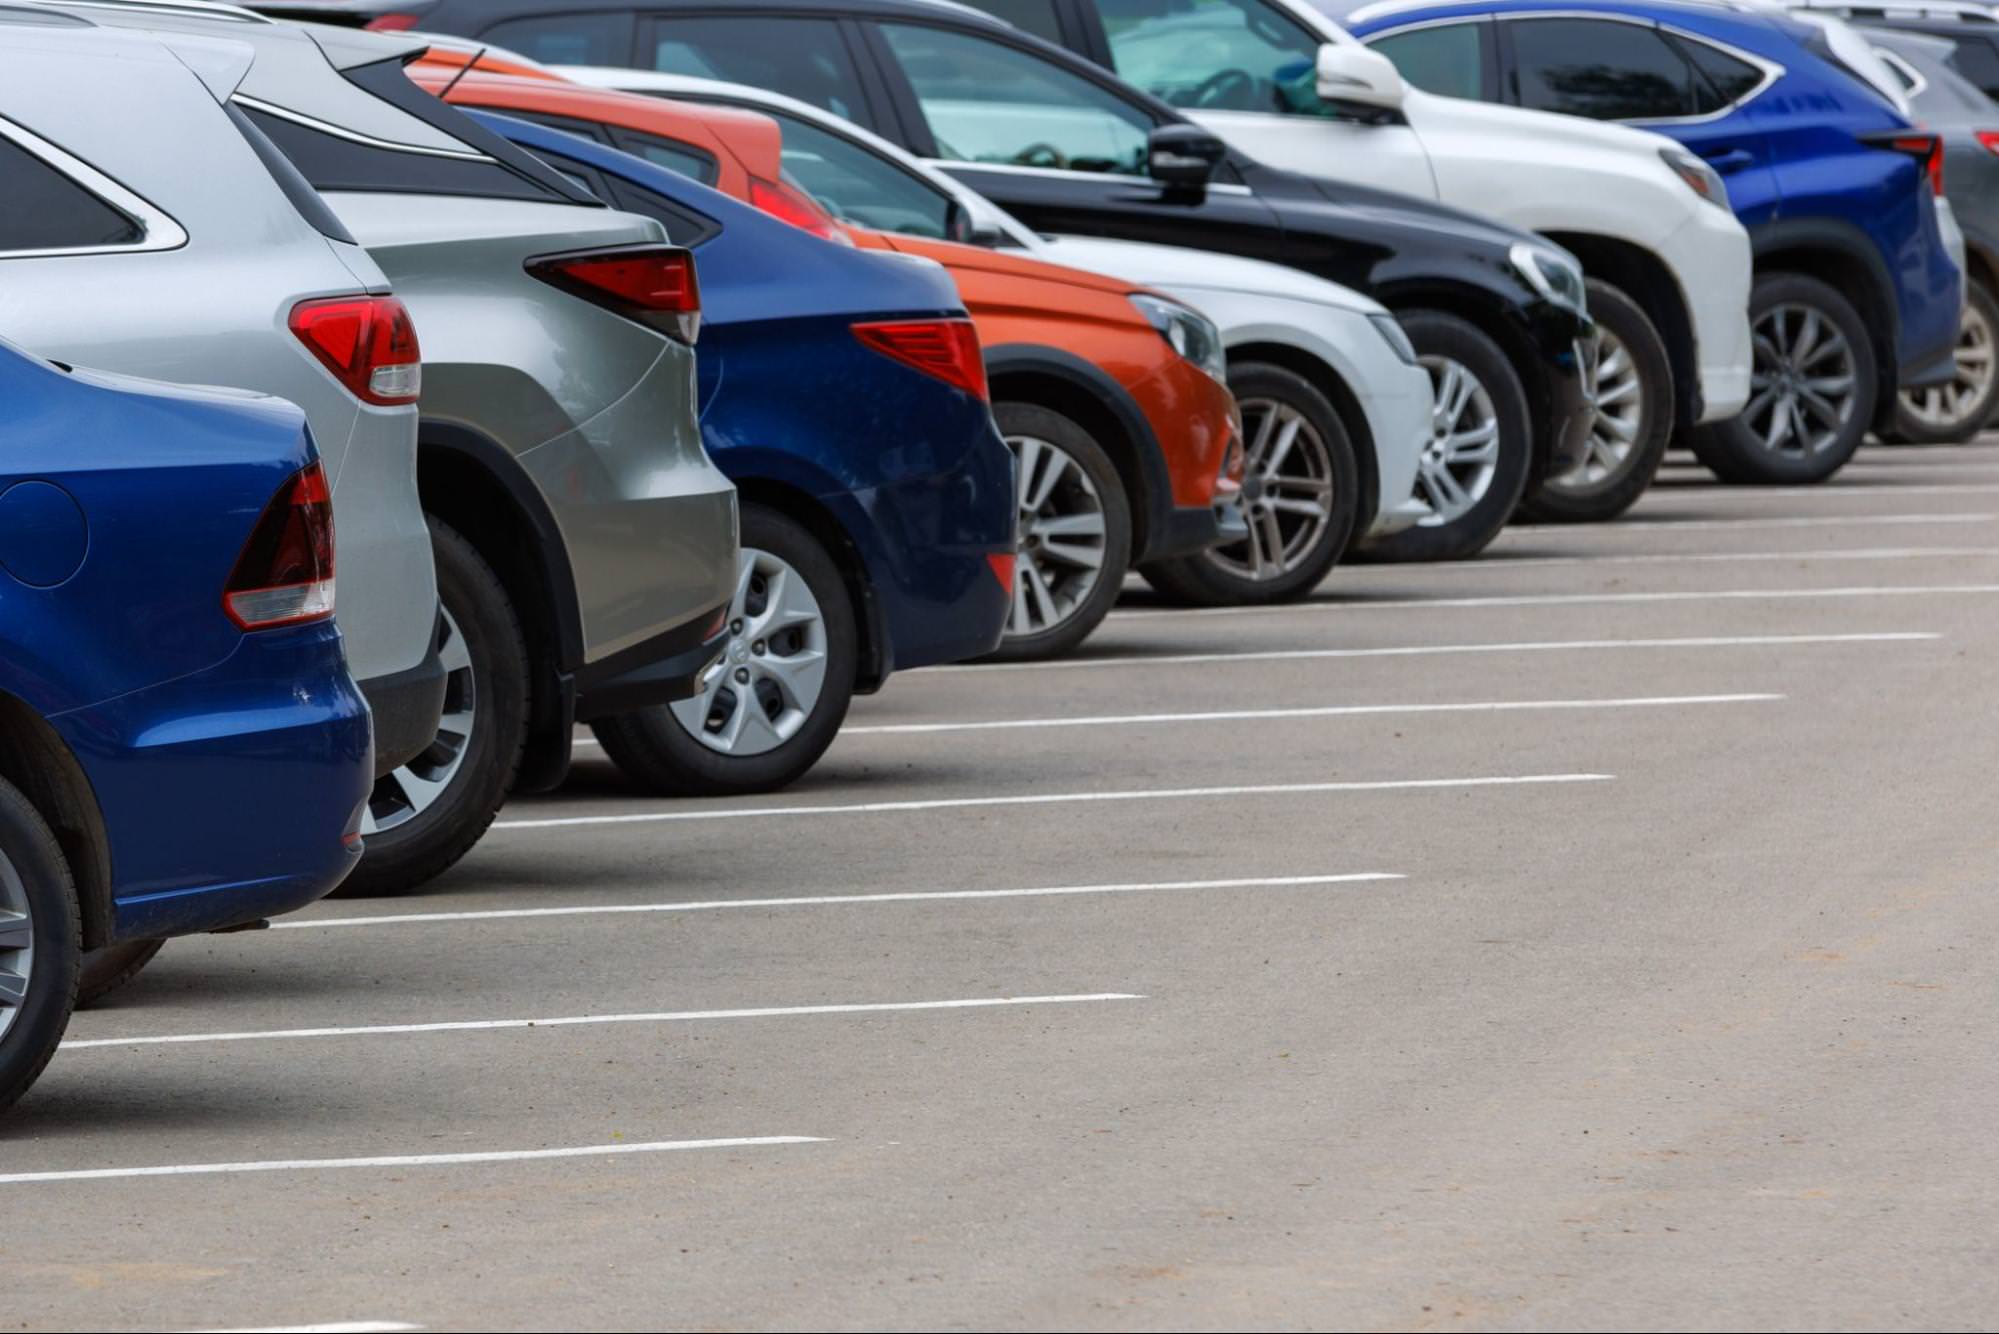 Fila de autos de diferentes colores en un estacionamiento de asfalto